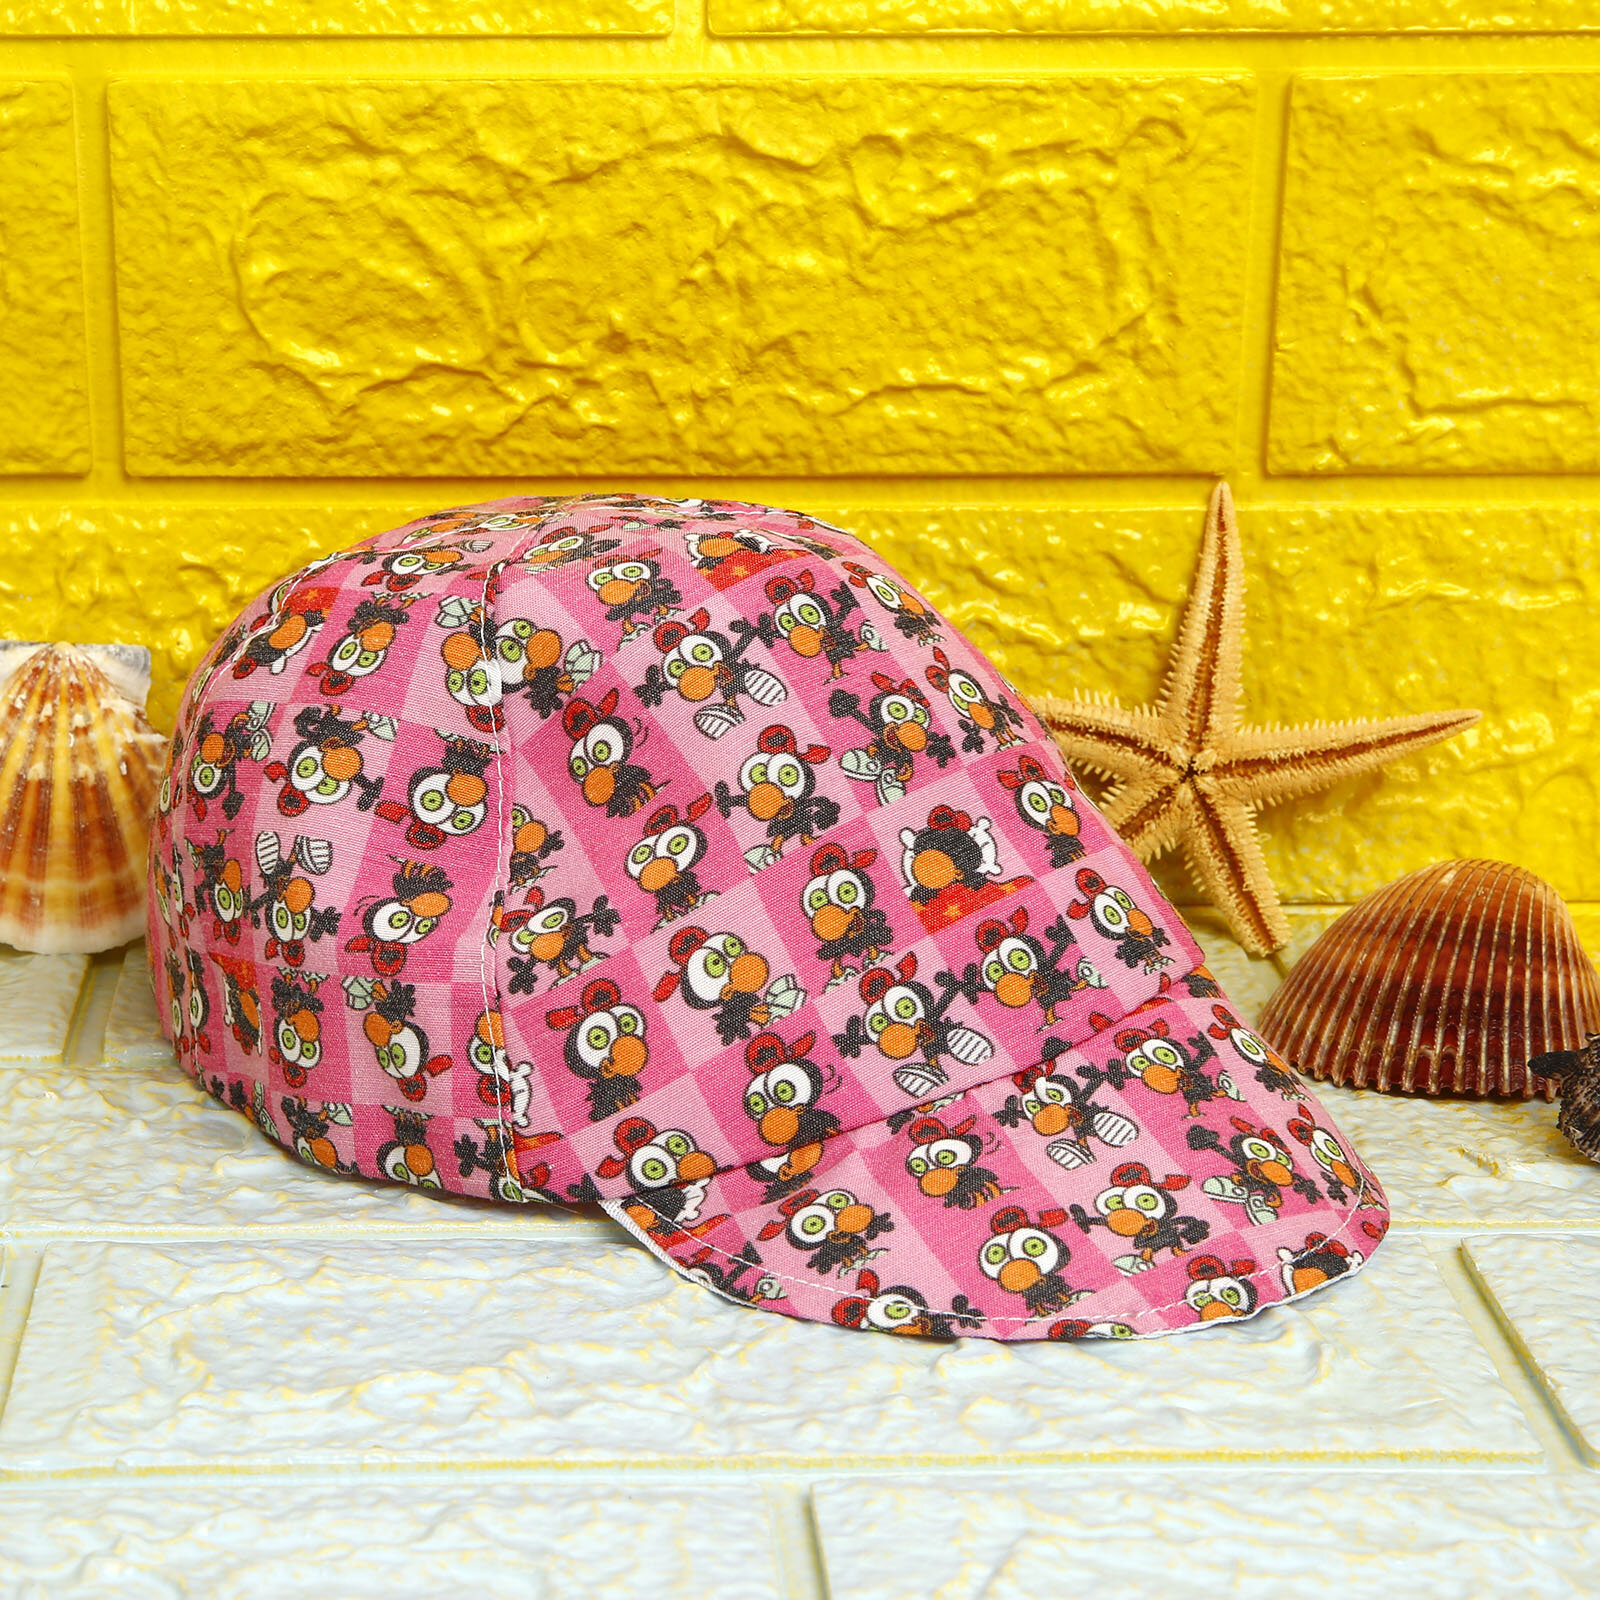 Limon&Zeytin Yaz Kız Şapka